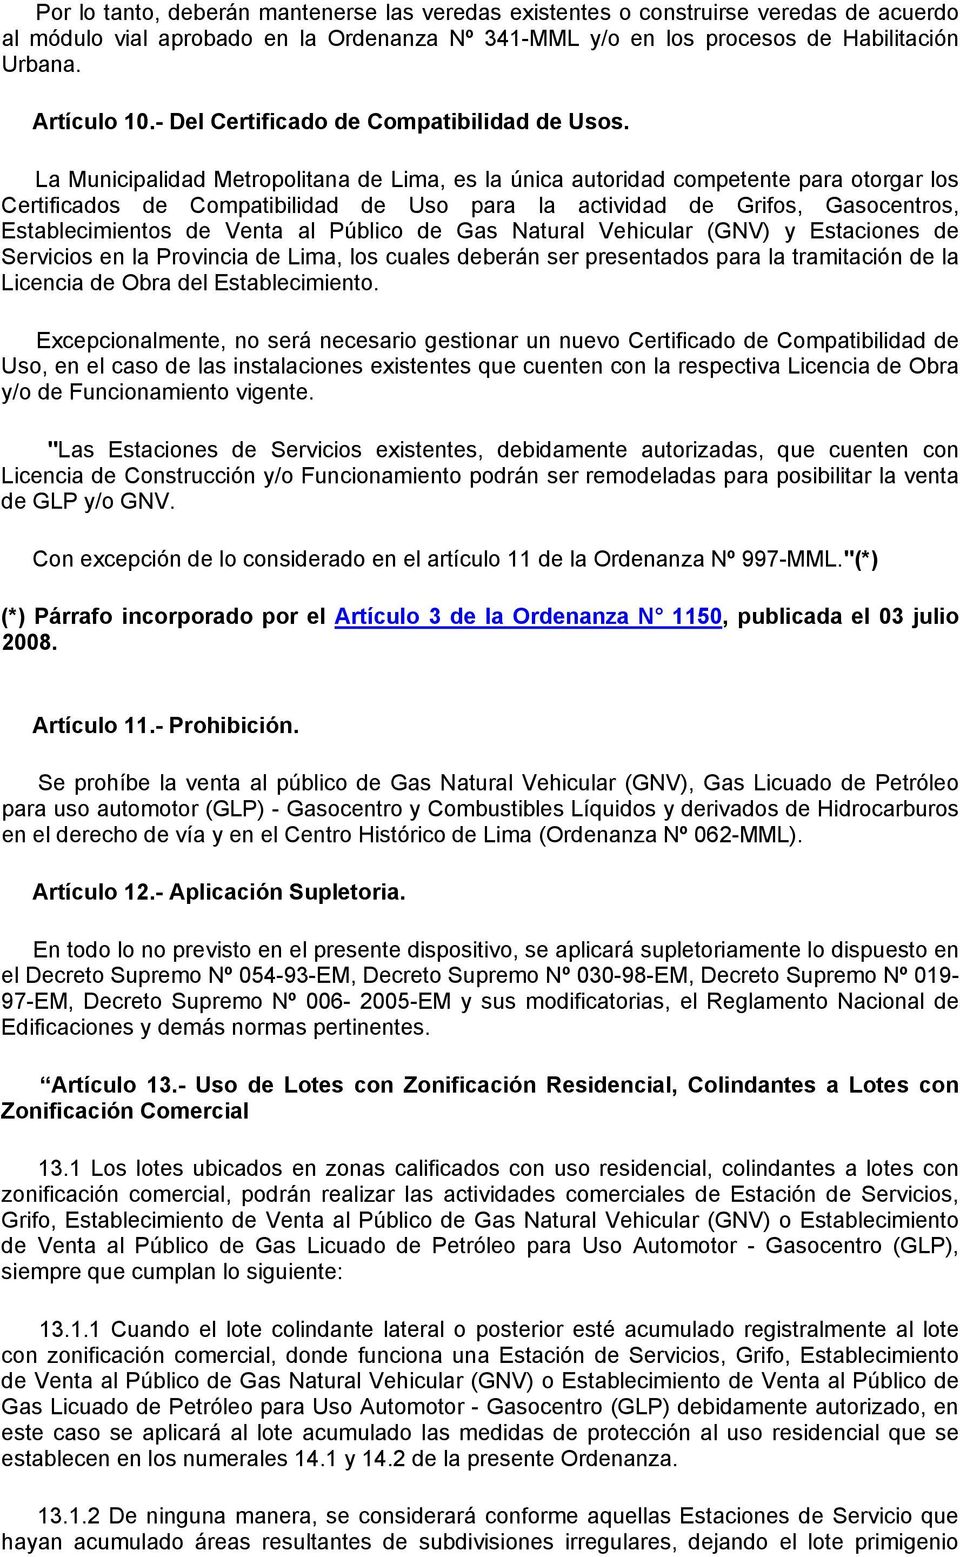 La Municipalidad Metropolitana de Lima, es la única autoridad competente para otorgar los Certificados de Compatibilidad de Uso para la actividad de Grifos, Gasocentros, Establecimientos de Venta al